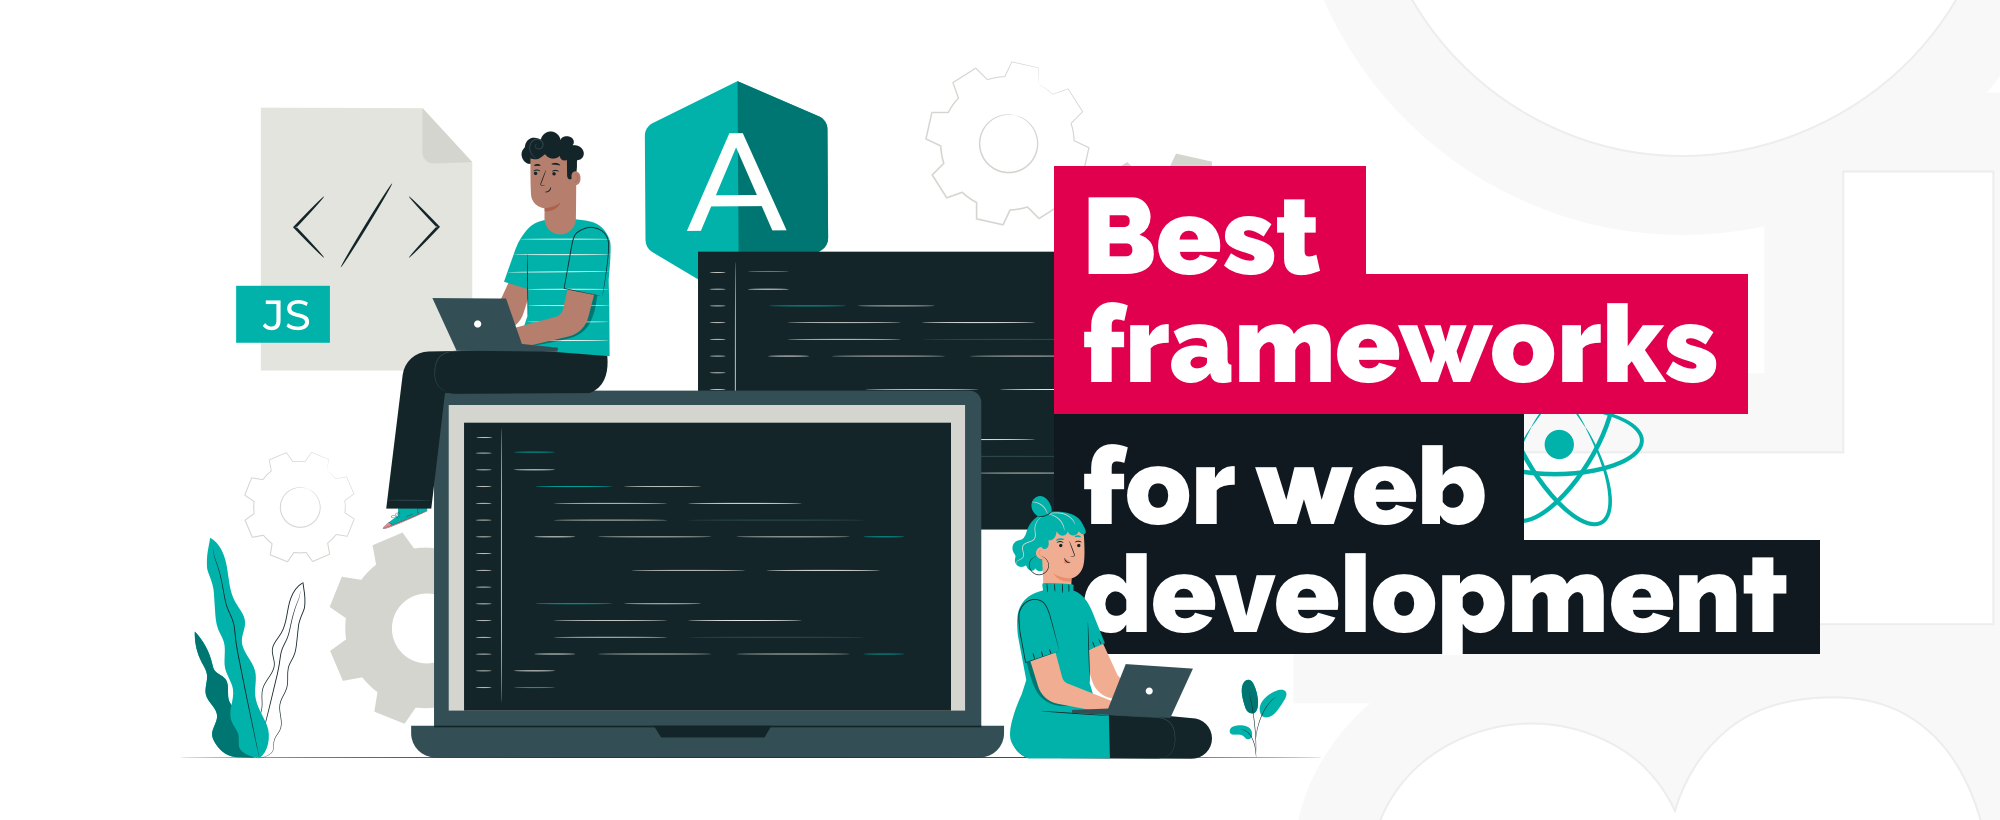 10 Best Frameworks for Web Development